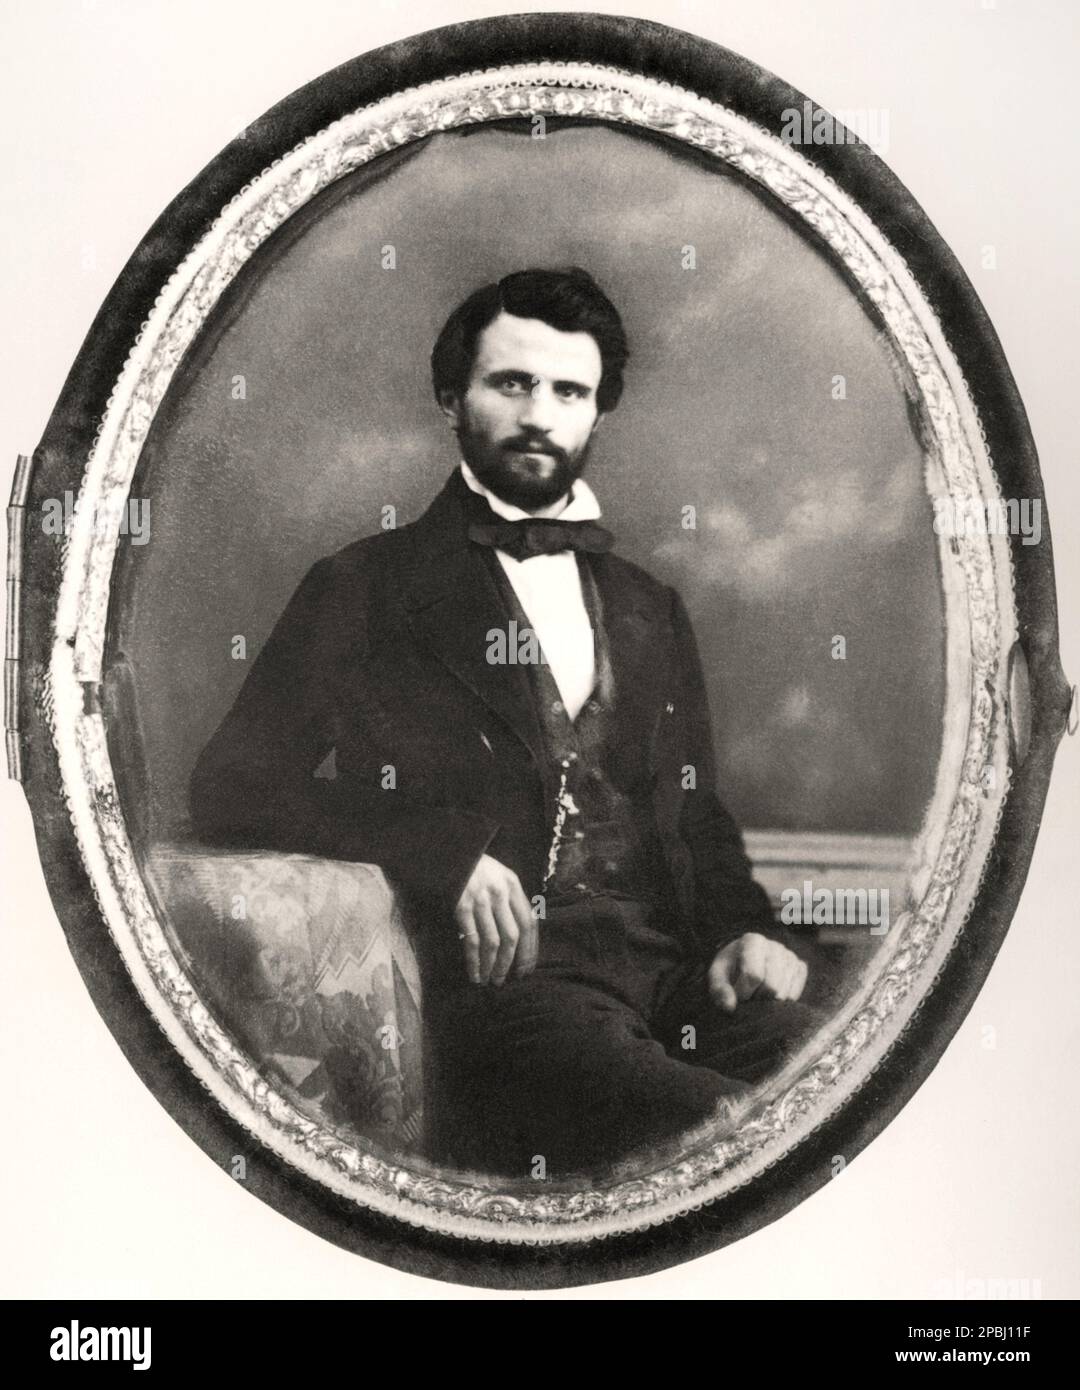 1848 ca , Parigi , FRANCIA : il celebre compositore italiano GIUSEPPE VERDI ( 1813 - 1901 ) , Foto daguerreotipo di anonimo fotografo francese - COMPOSITORE - OPERA LIRICA - CLASSICA - CLASSICA - RITRATTO - ritratto - musicale - MUSICA - BARBA - BARBA - BARBA - FIOCCO - FIOCCO - CRAVATTA - CRAVATTA - CRAVATTA - dagherrotipo - archivio GBB Foto Stock